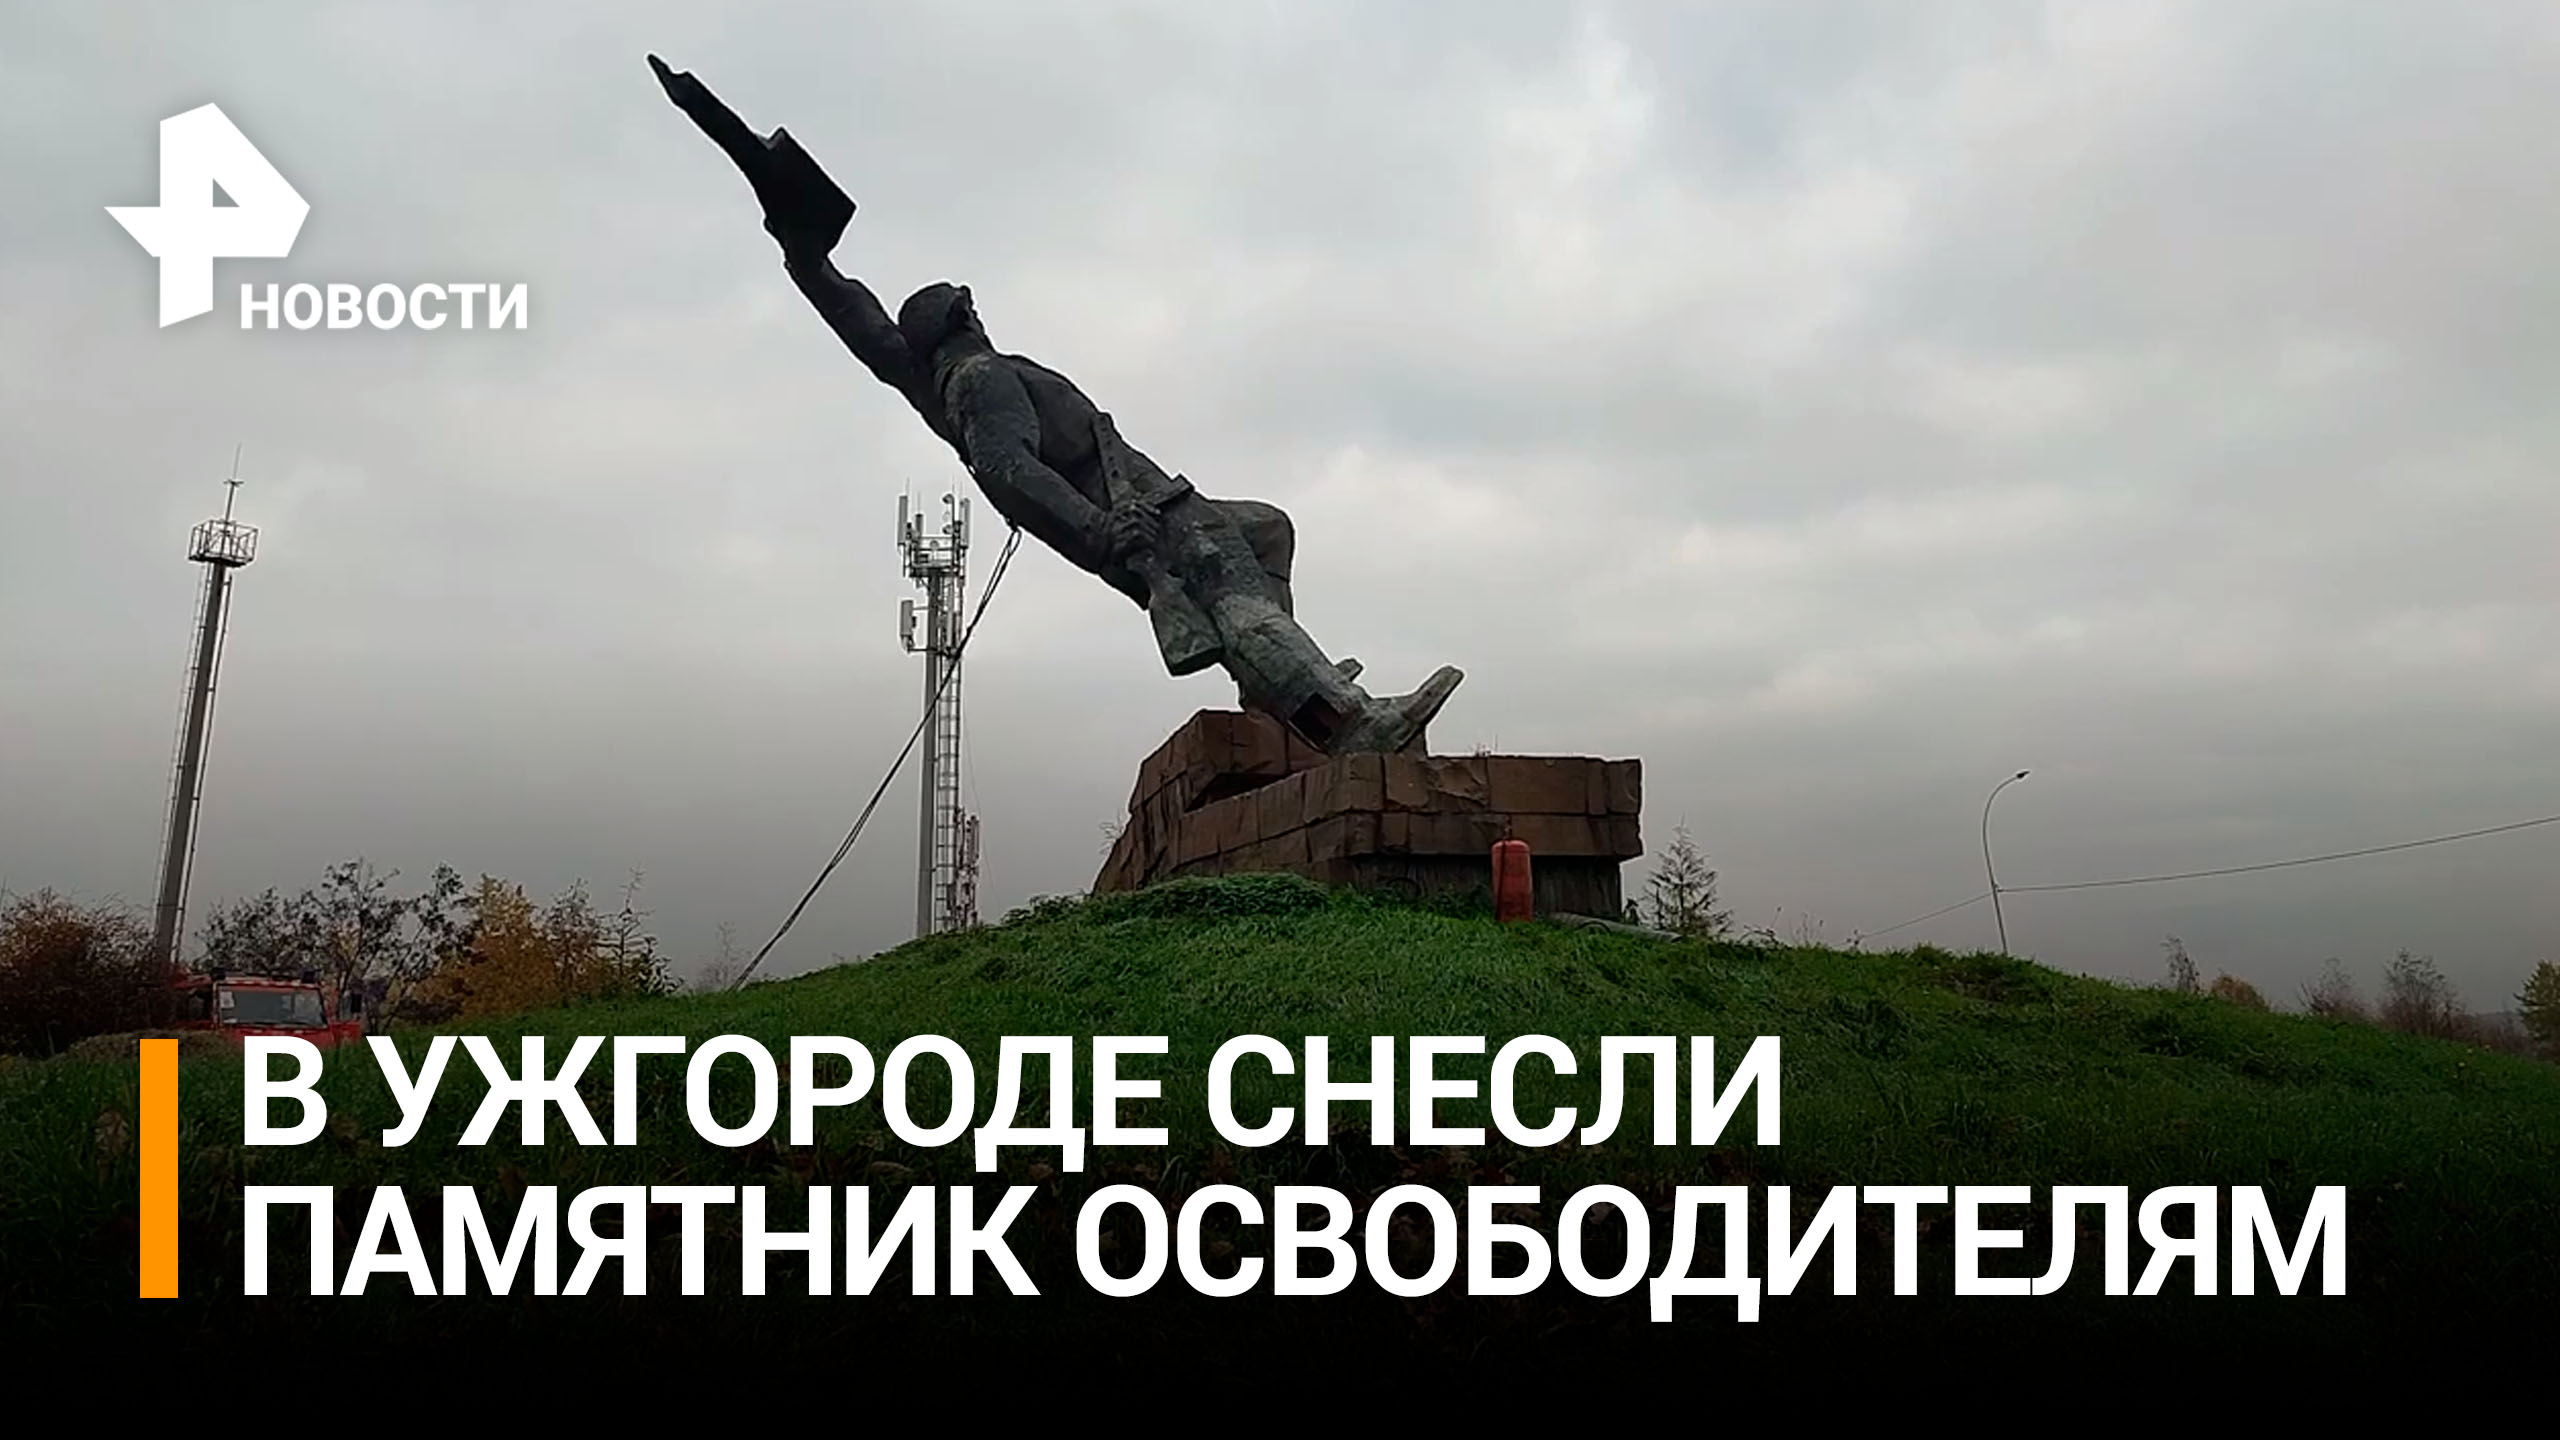 В Ужгороде снесли памятник "Украина - освободителям" / РЕН Новости